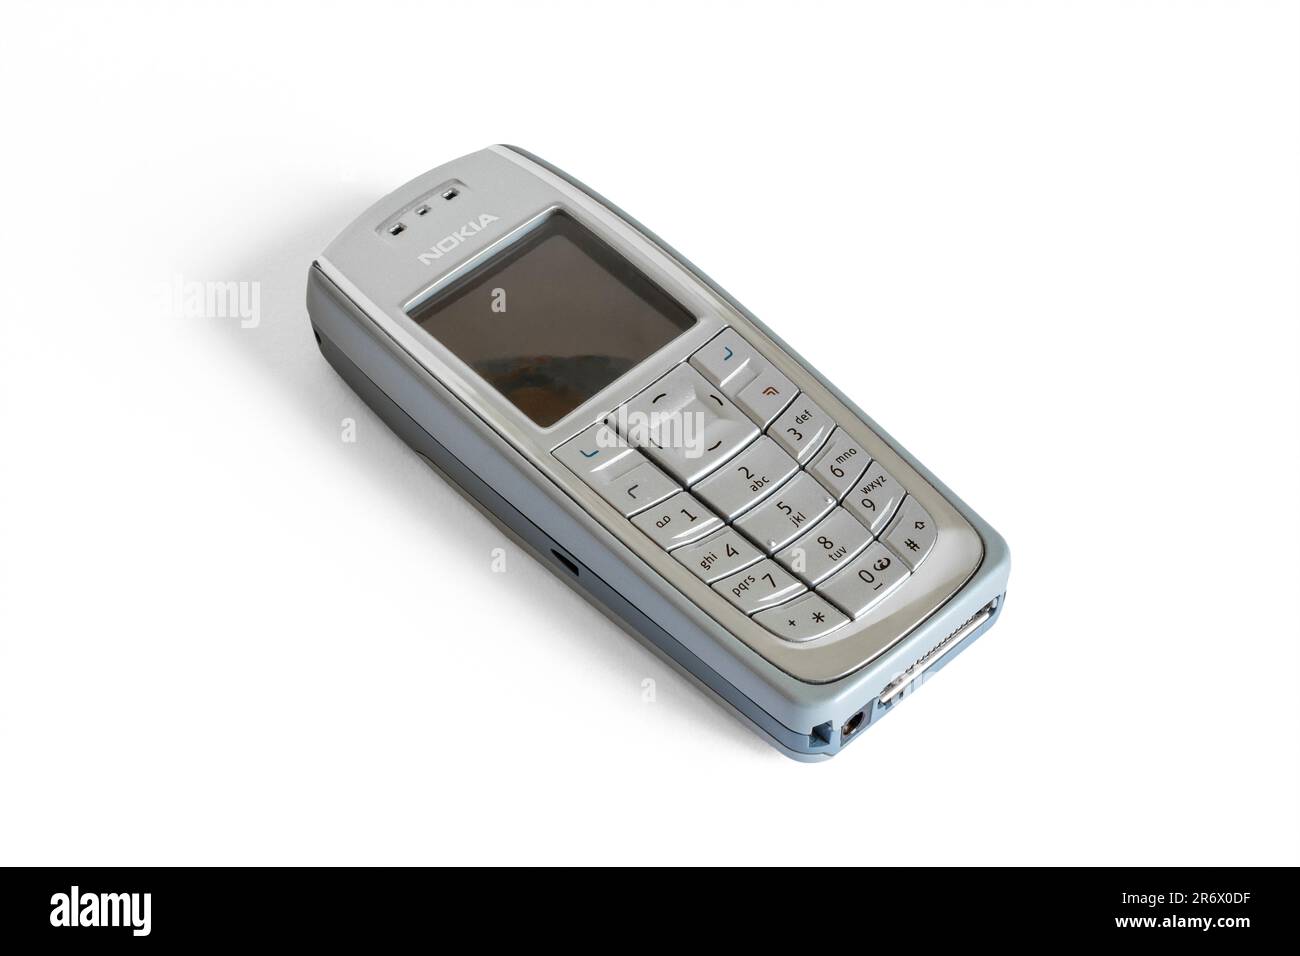 Nokia 3120 RH-19 telefono cellulare da 2004, isolato su uno sfondo bianco, Regno Unito Foto Stock